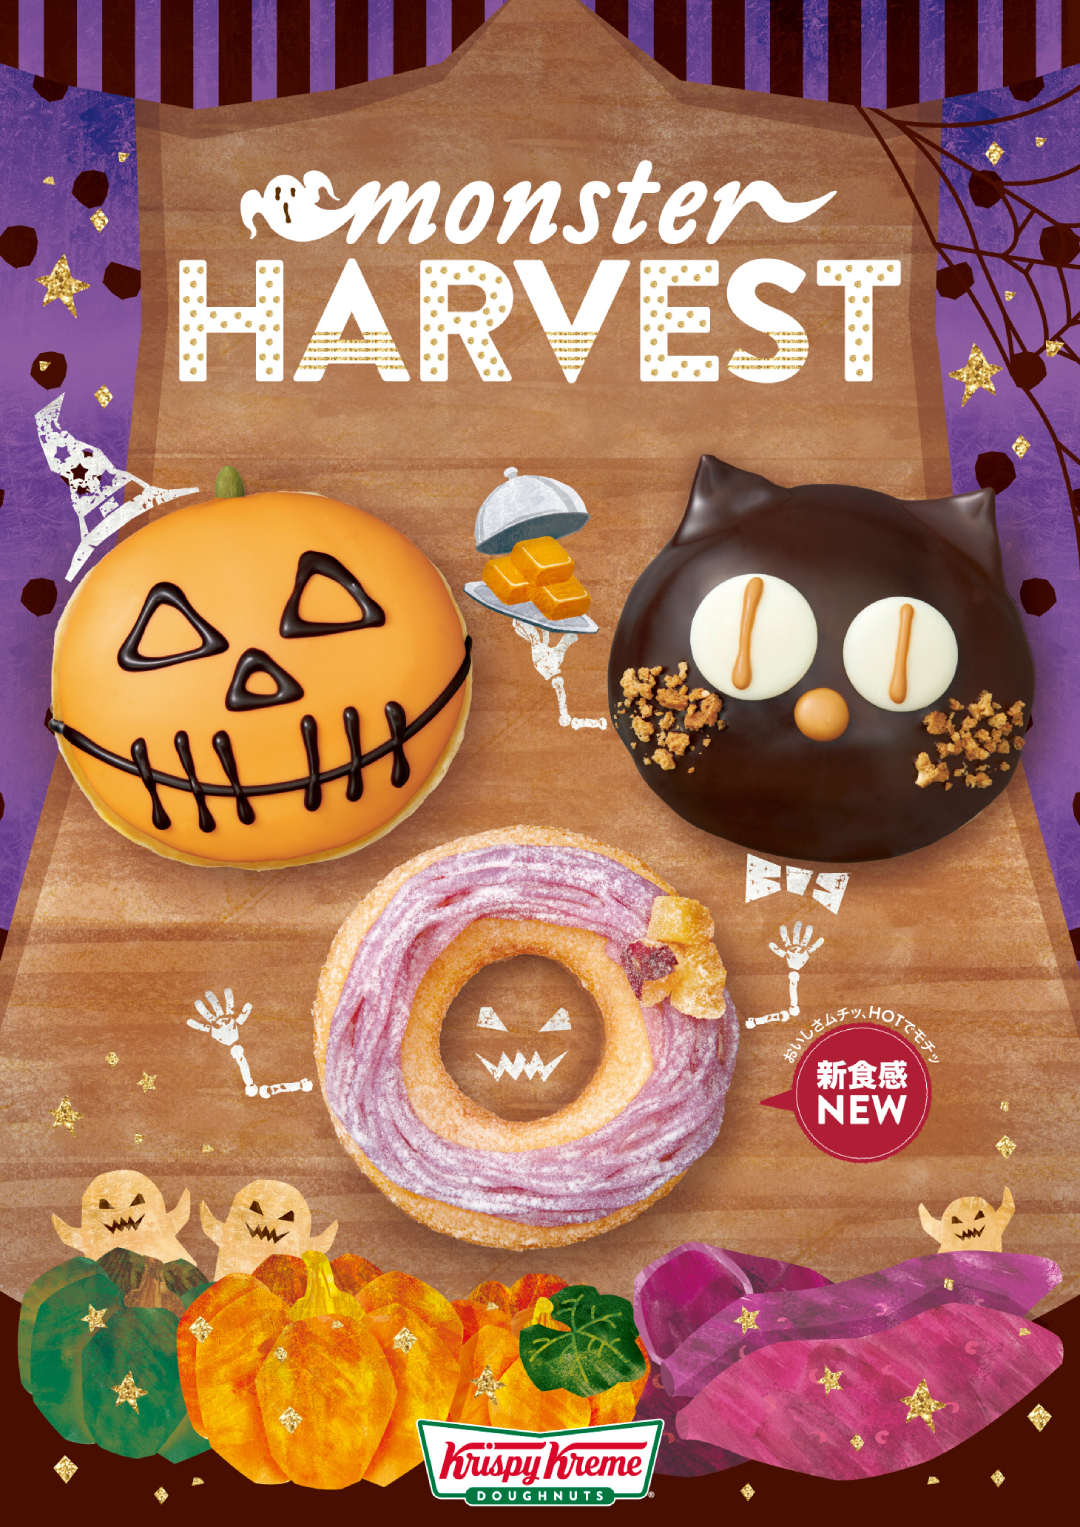 パンプキン 紫芋 キャラメル でハロウィンを楽しもう クリスピー クリーム ドーナツから Monster Harvest 期間限定で発売 詳細記事 Sgs109